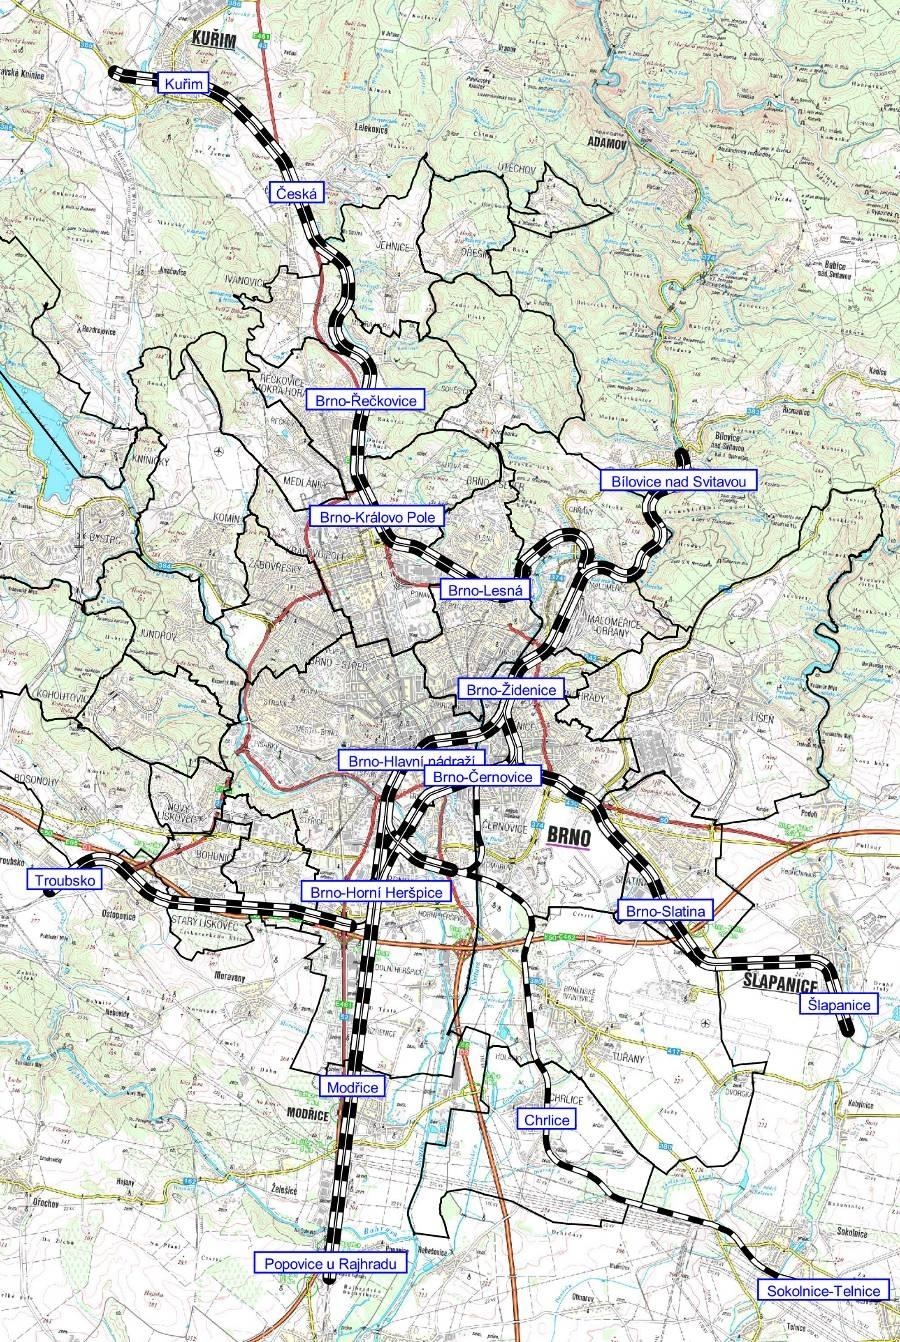 Obrázek 22 - Železniční tratě na území Brna. (Zdroj: Generel veřejné hromadné dopravy) 6.1.9.